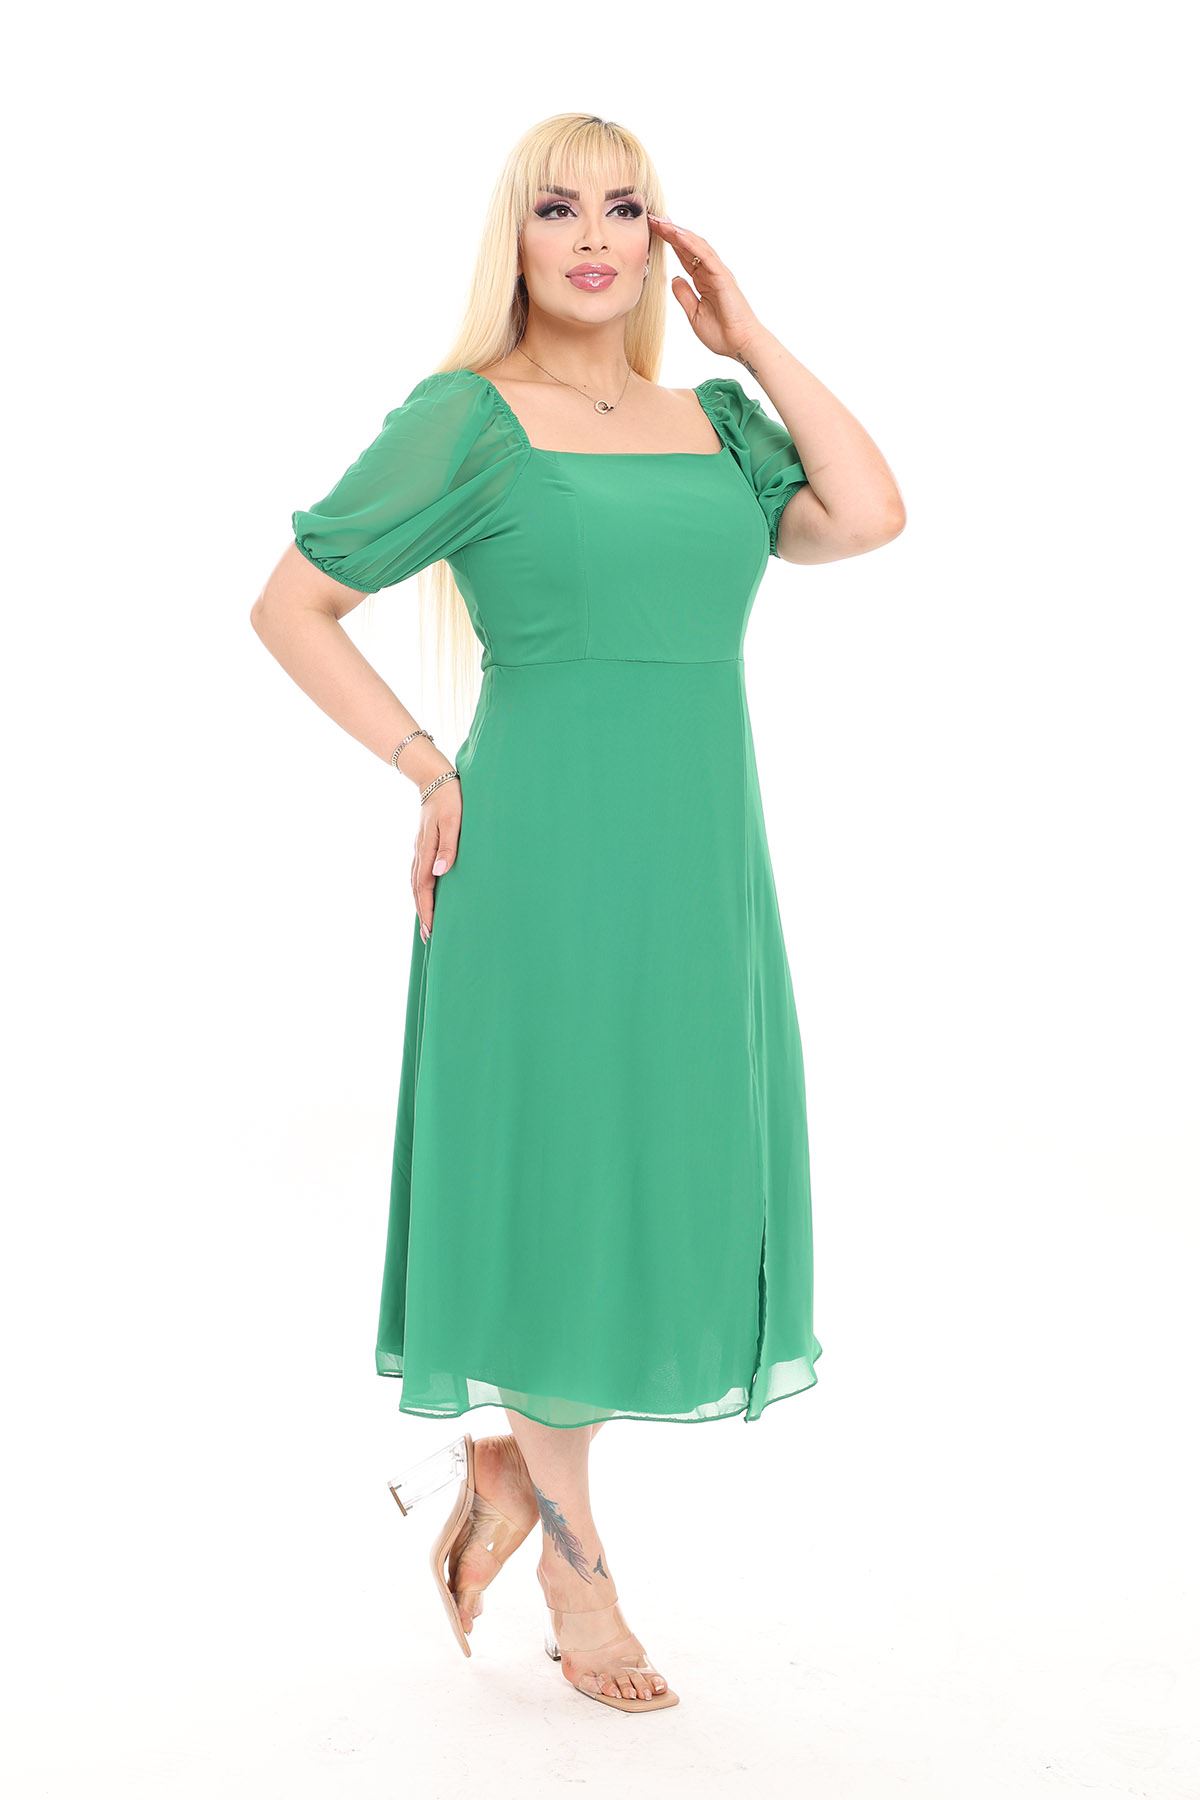 Kadın Büyük Beden Yeşil Şifon Yırtmaçlı Yazlık Elbise 8D-2152